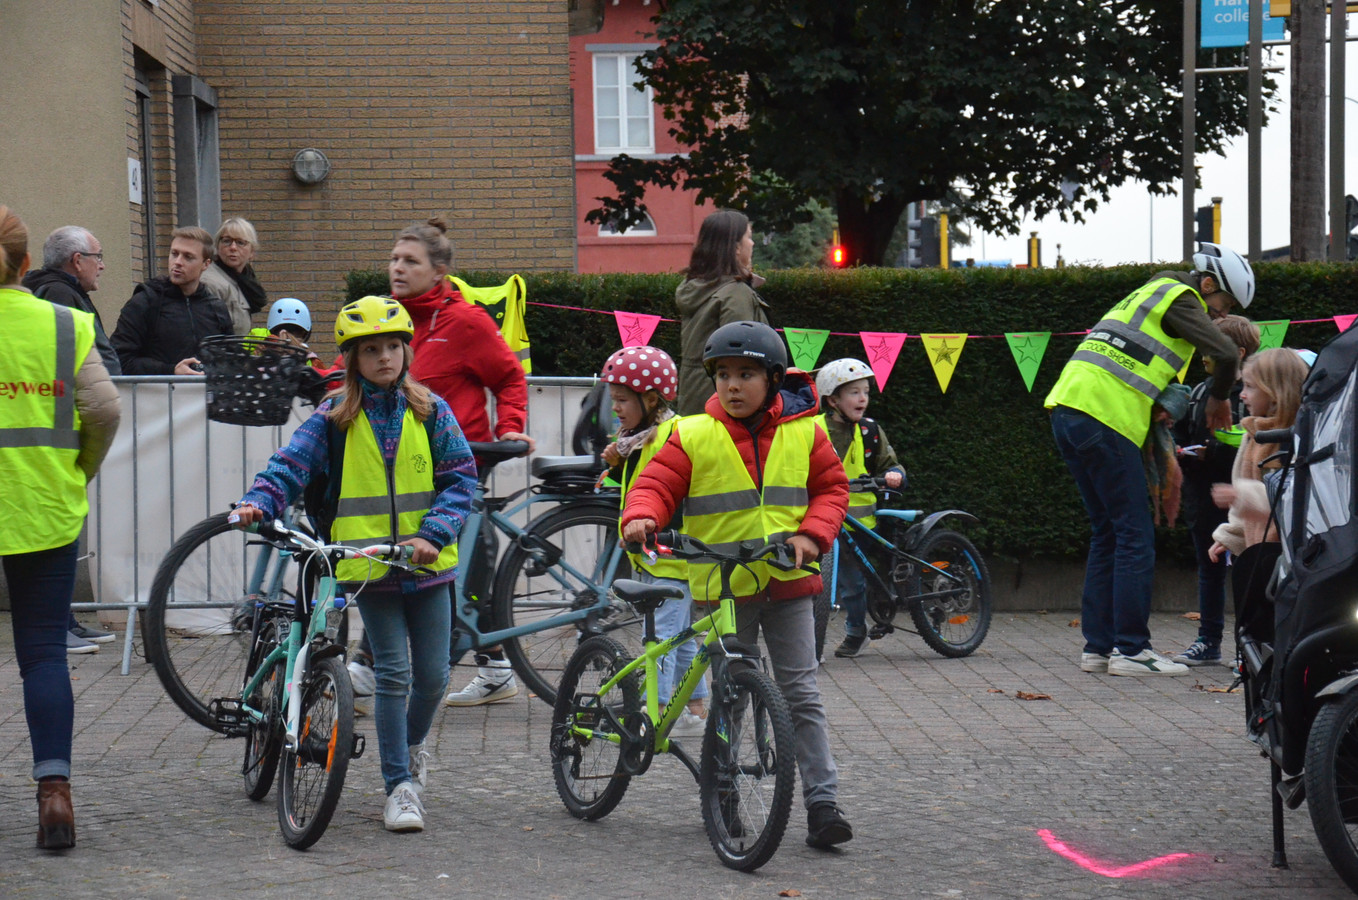 zitten school smokkel Actie 'Helm Op Fluo Top!' moet leerlingen Hartencollege Meerbeke motiveren  om veilig per fiets naar school te komen | Foto | hln.be